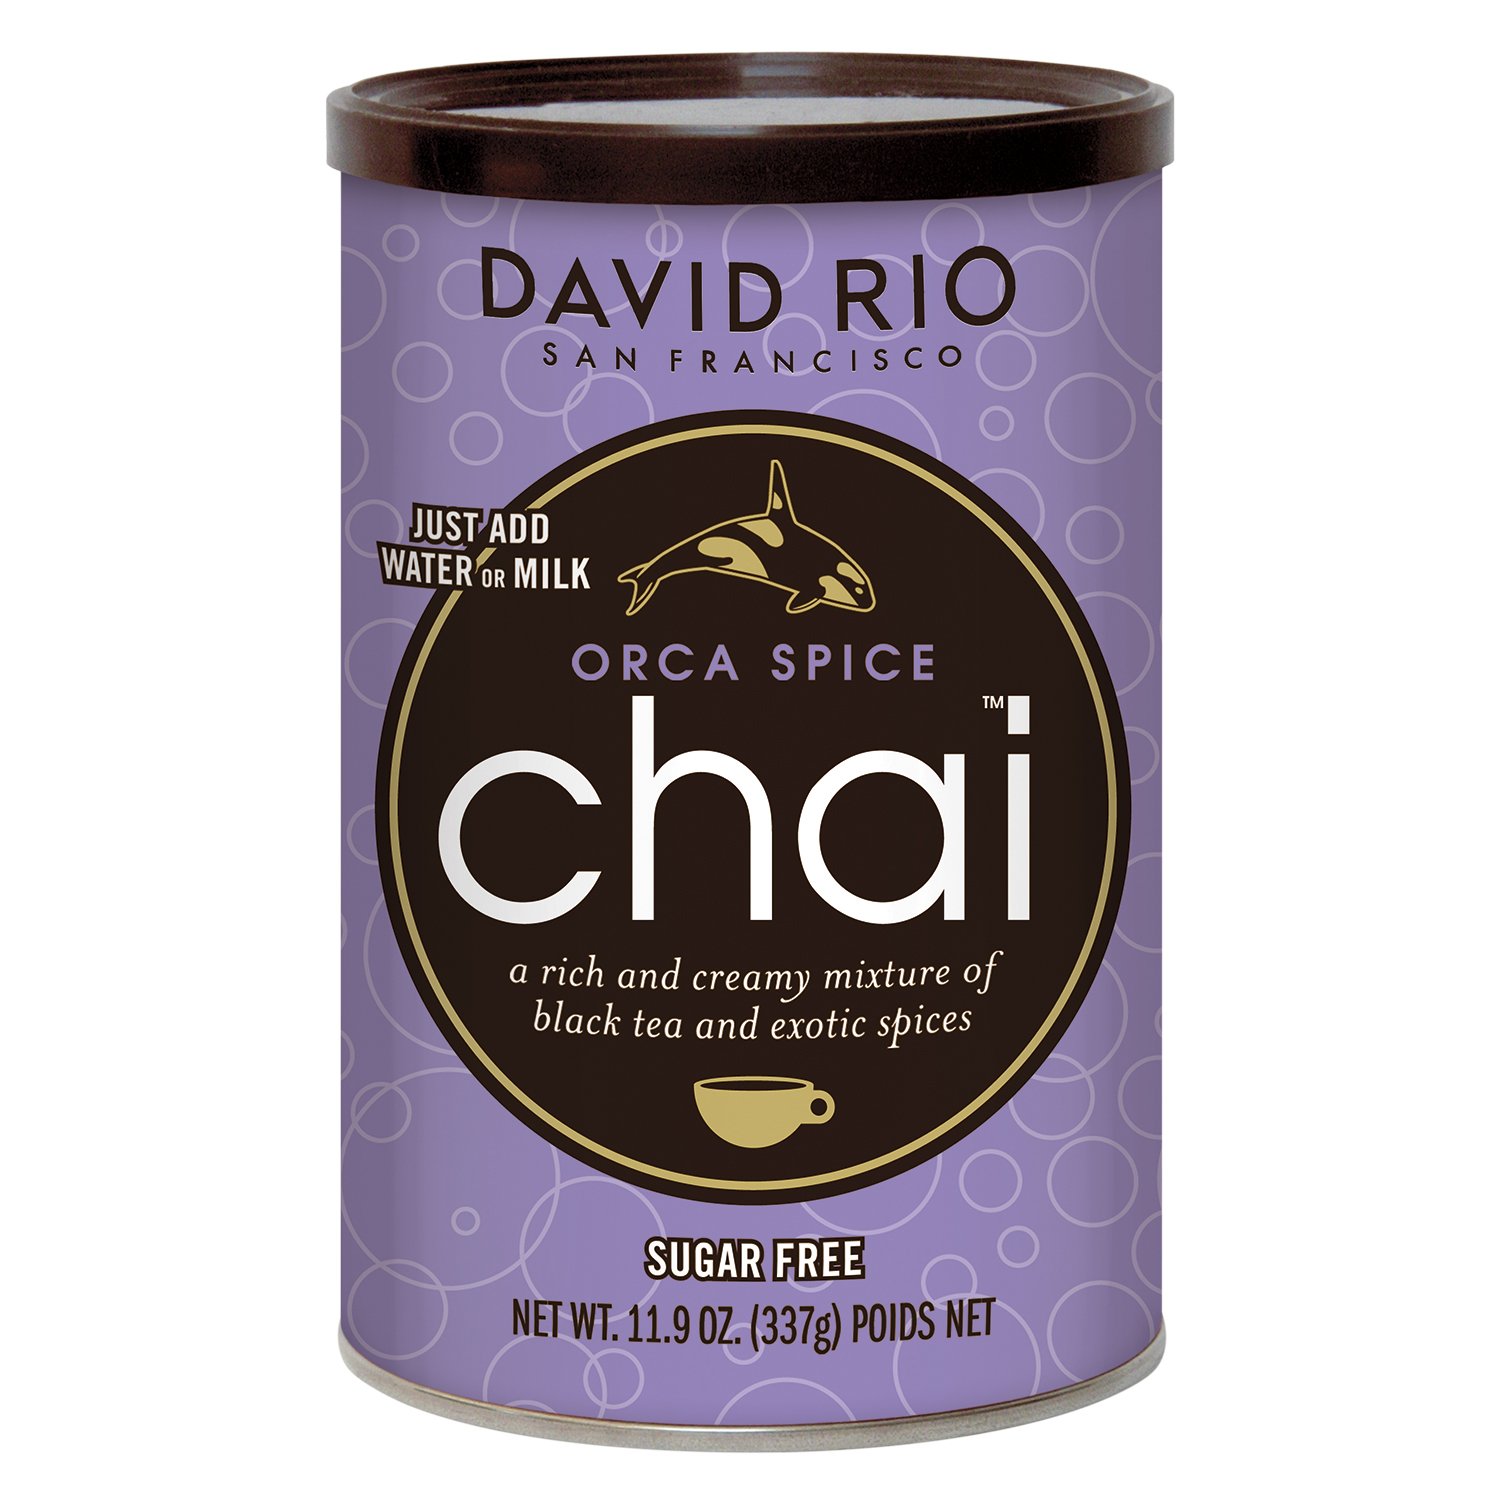 David Rio Orca Spice chai